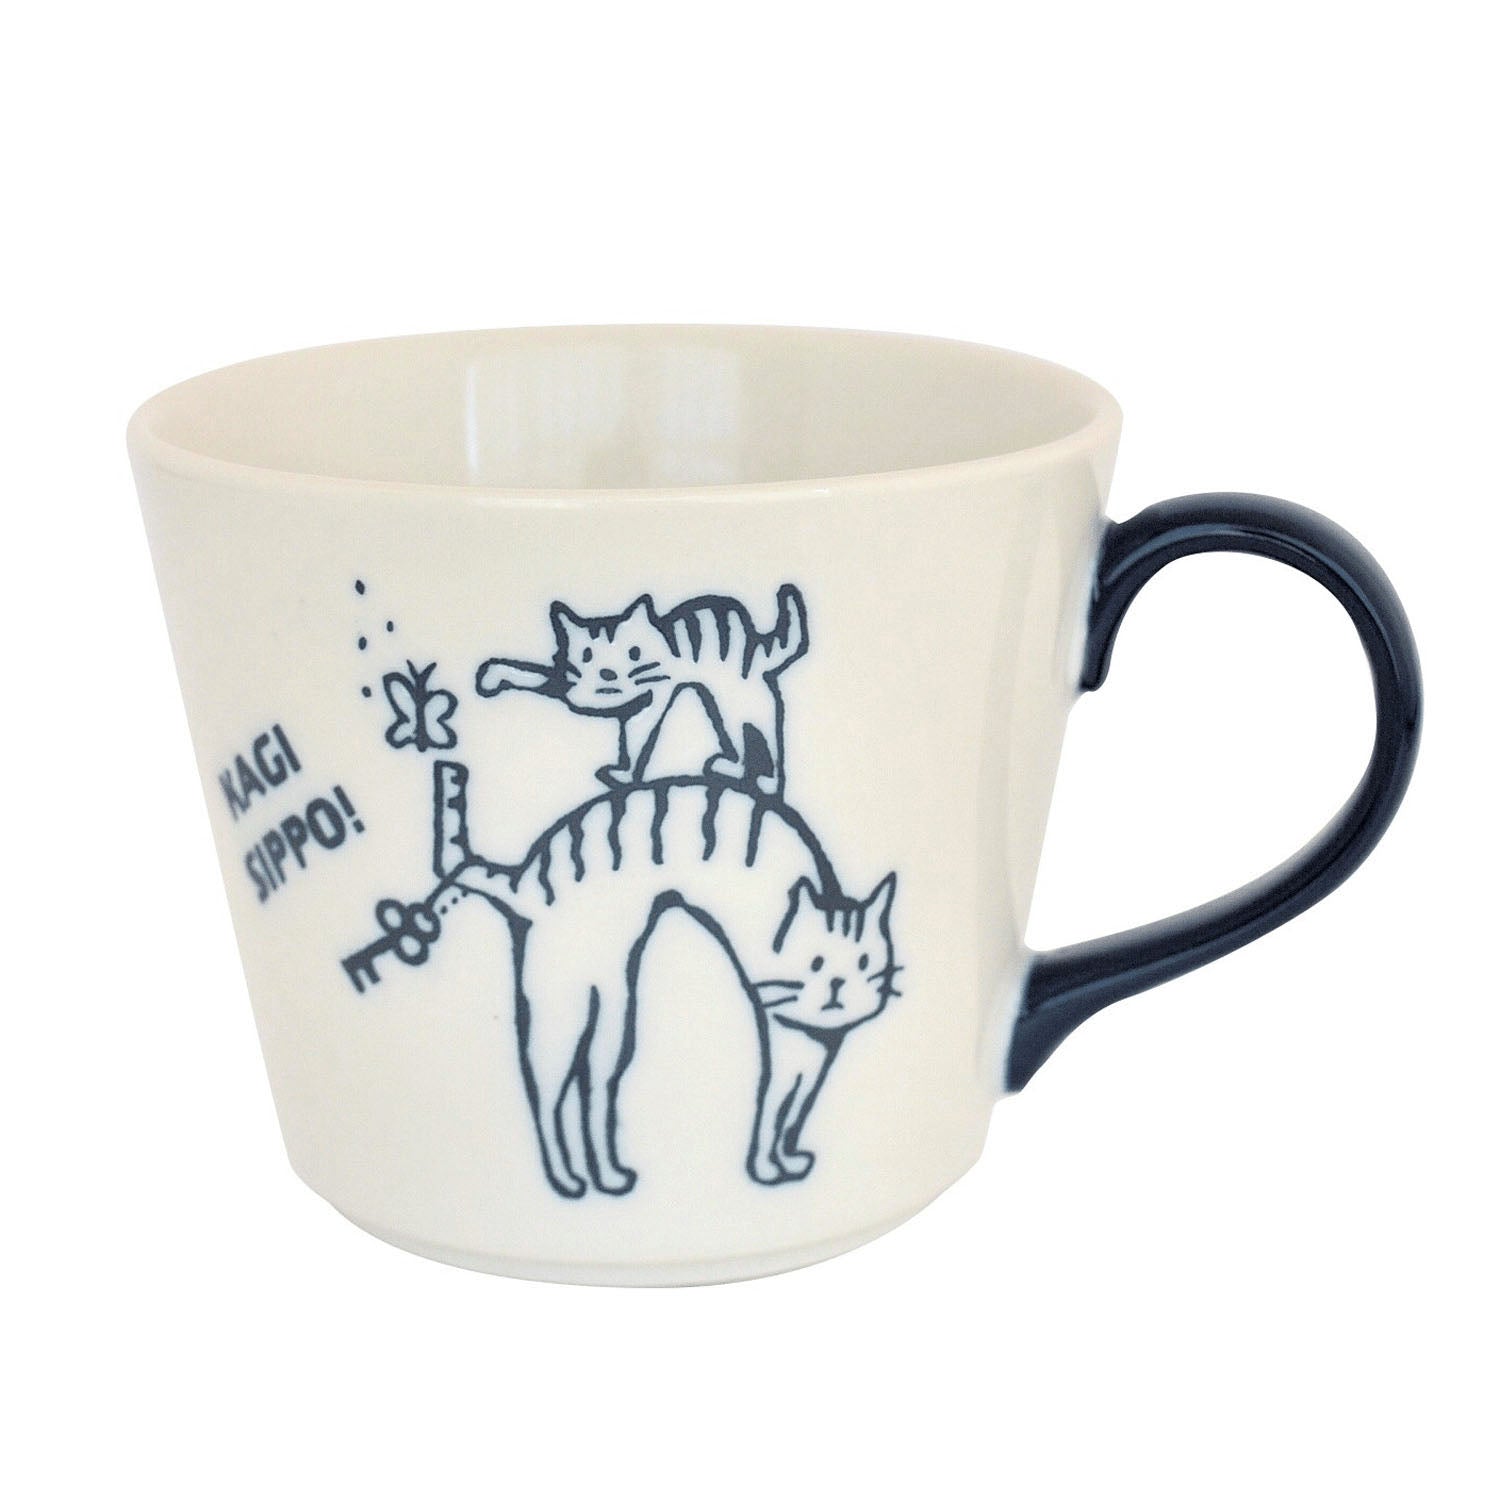 鑰匙尾巴貓兒陶瓷杯 │Key Tail Cat Mug 